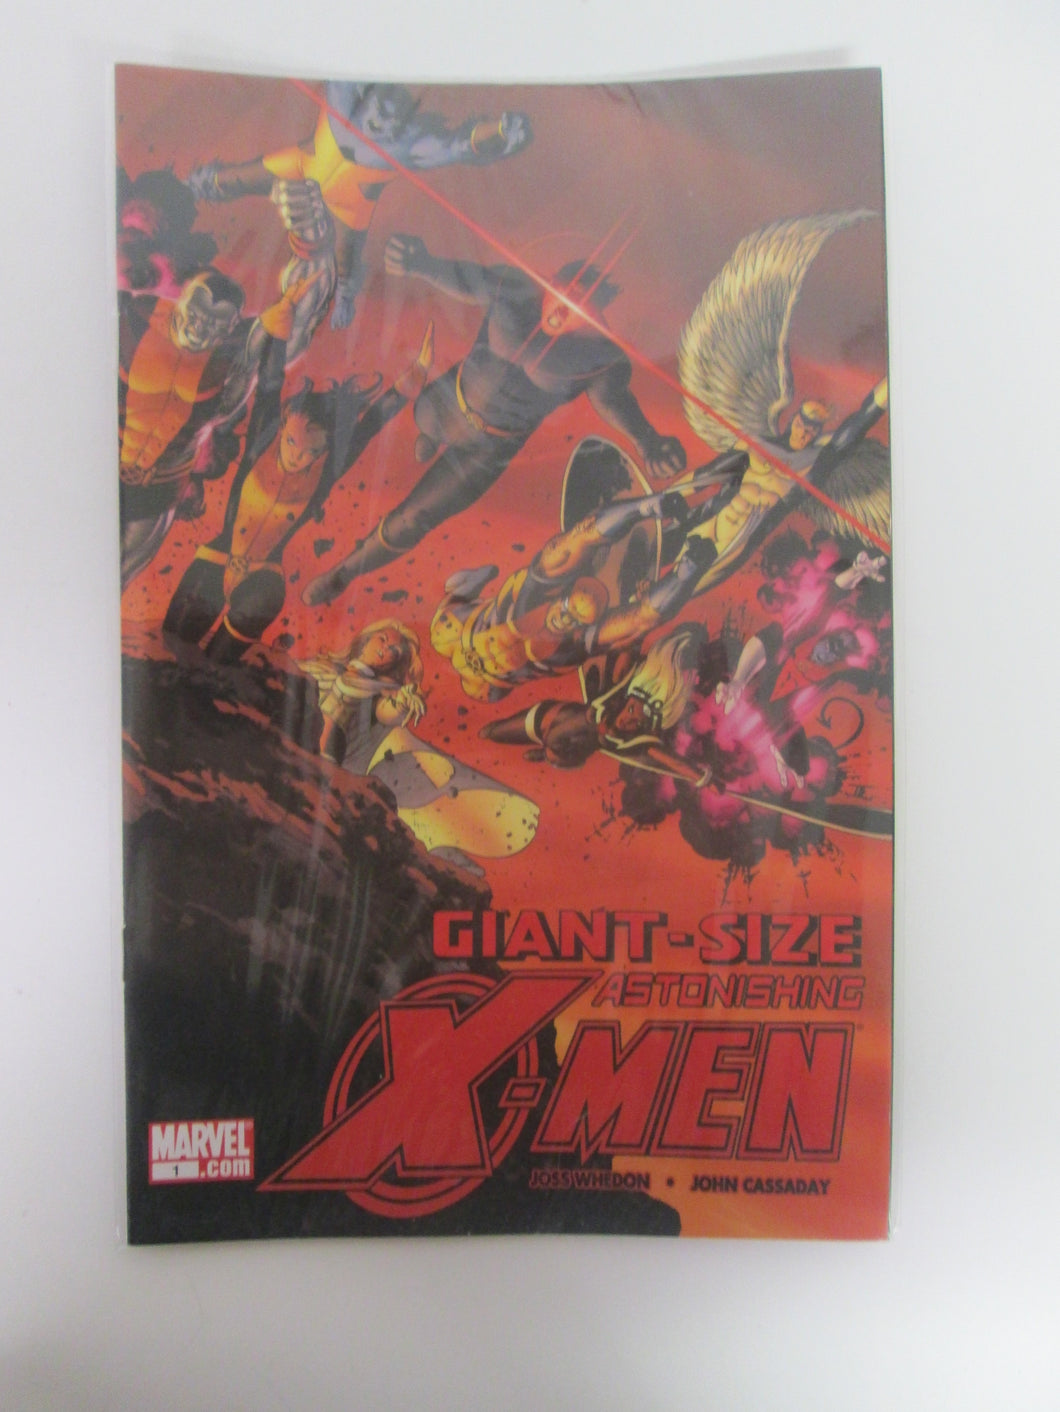 Giant-Size Astonishing X-Men # 1 (Marvel)